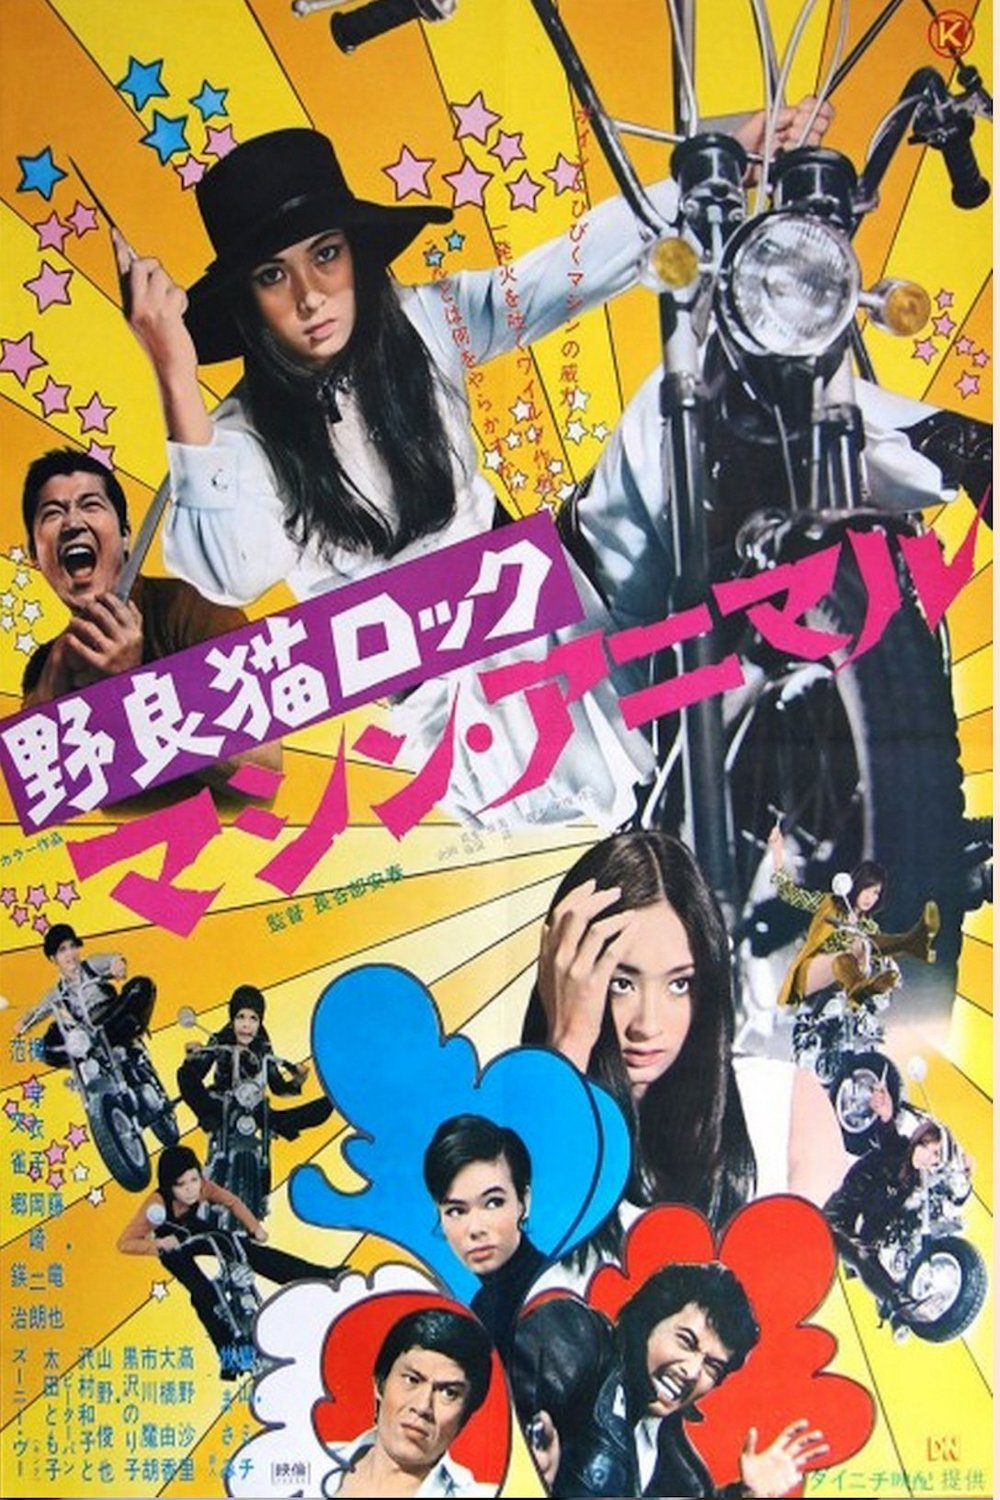 Poster of the movie Nora-neko rokku: Mashin animaru